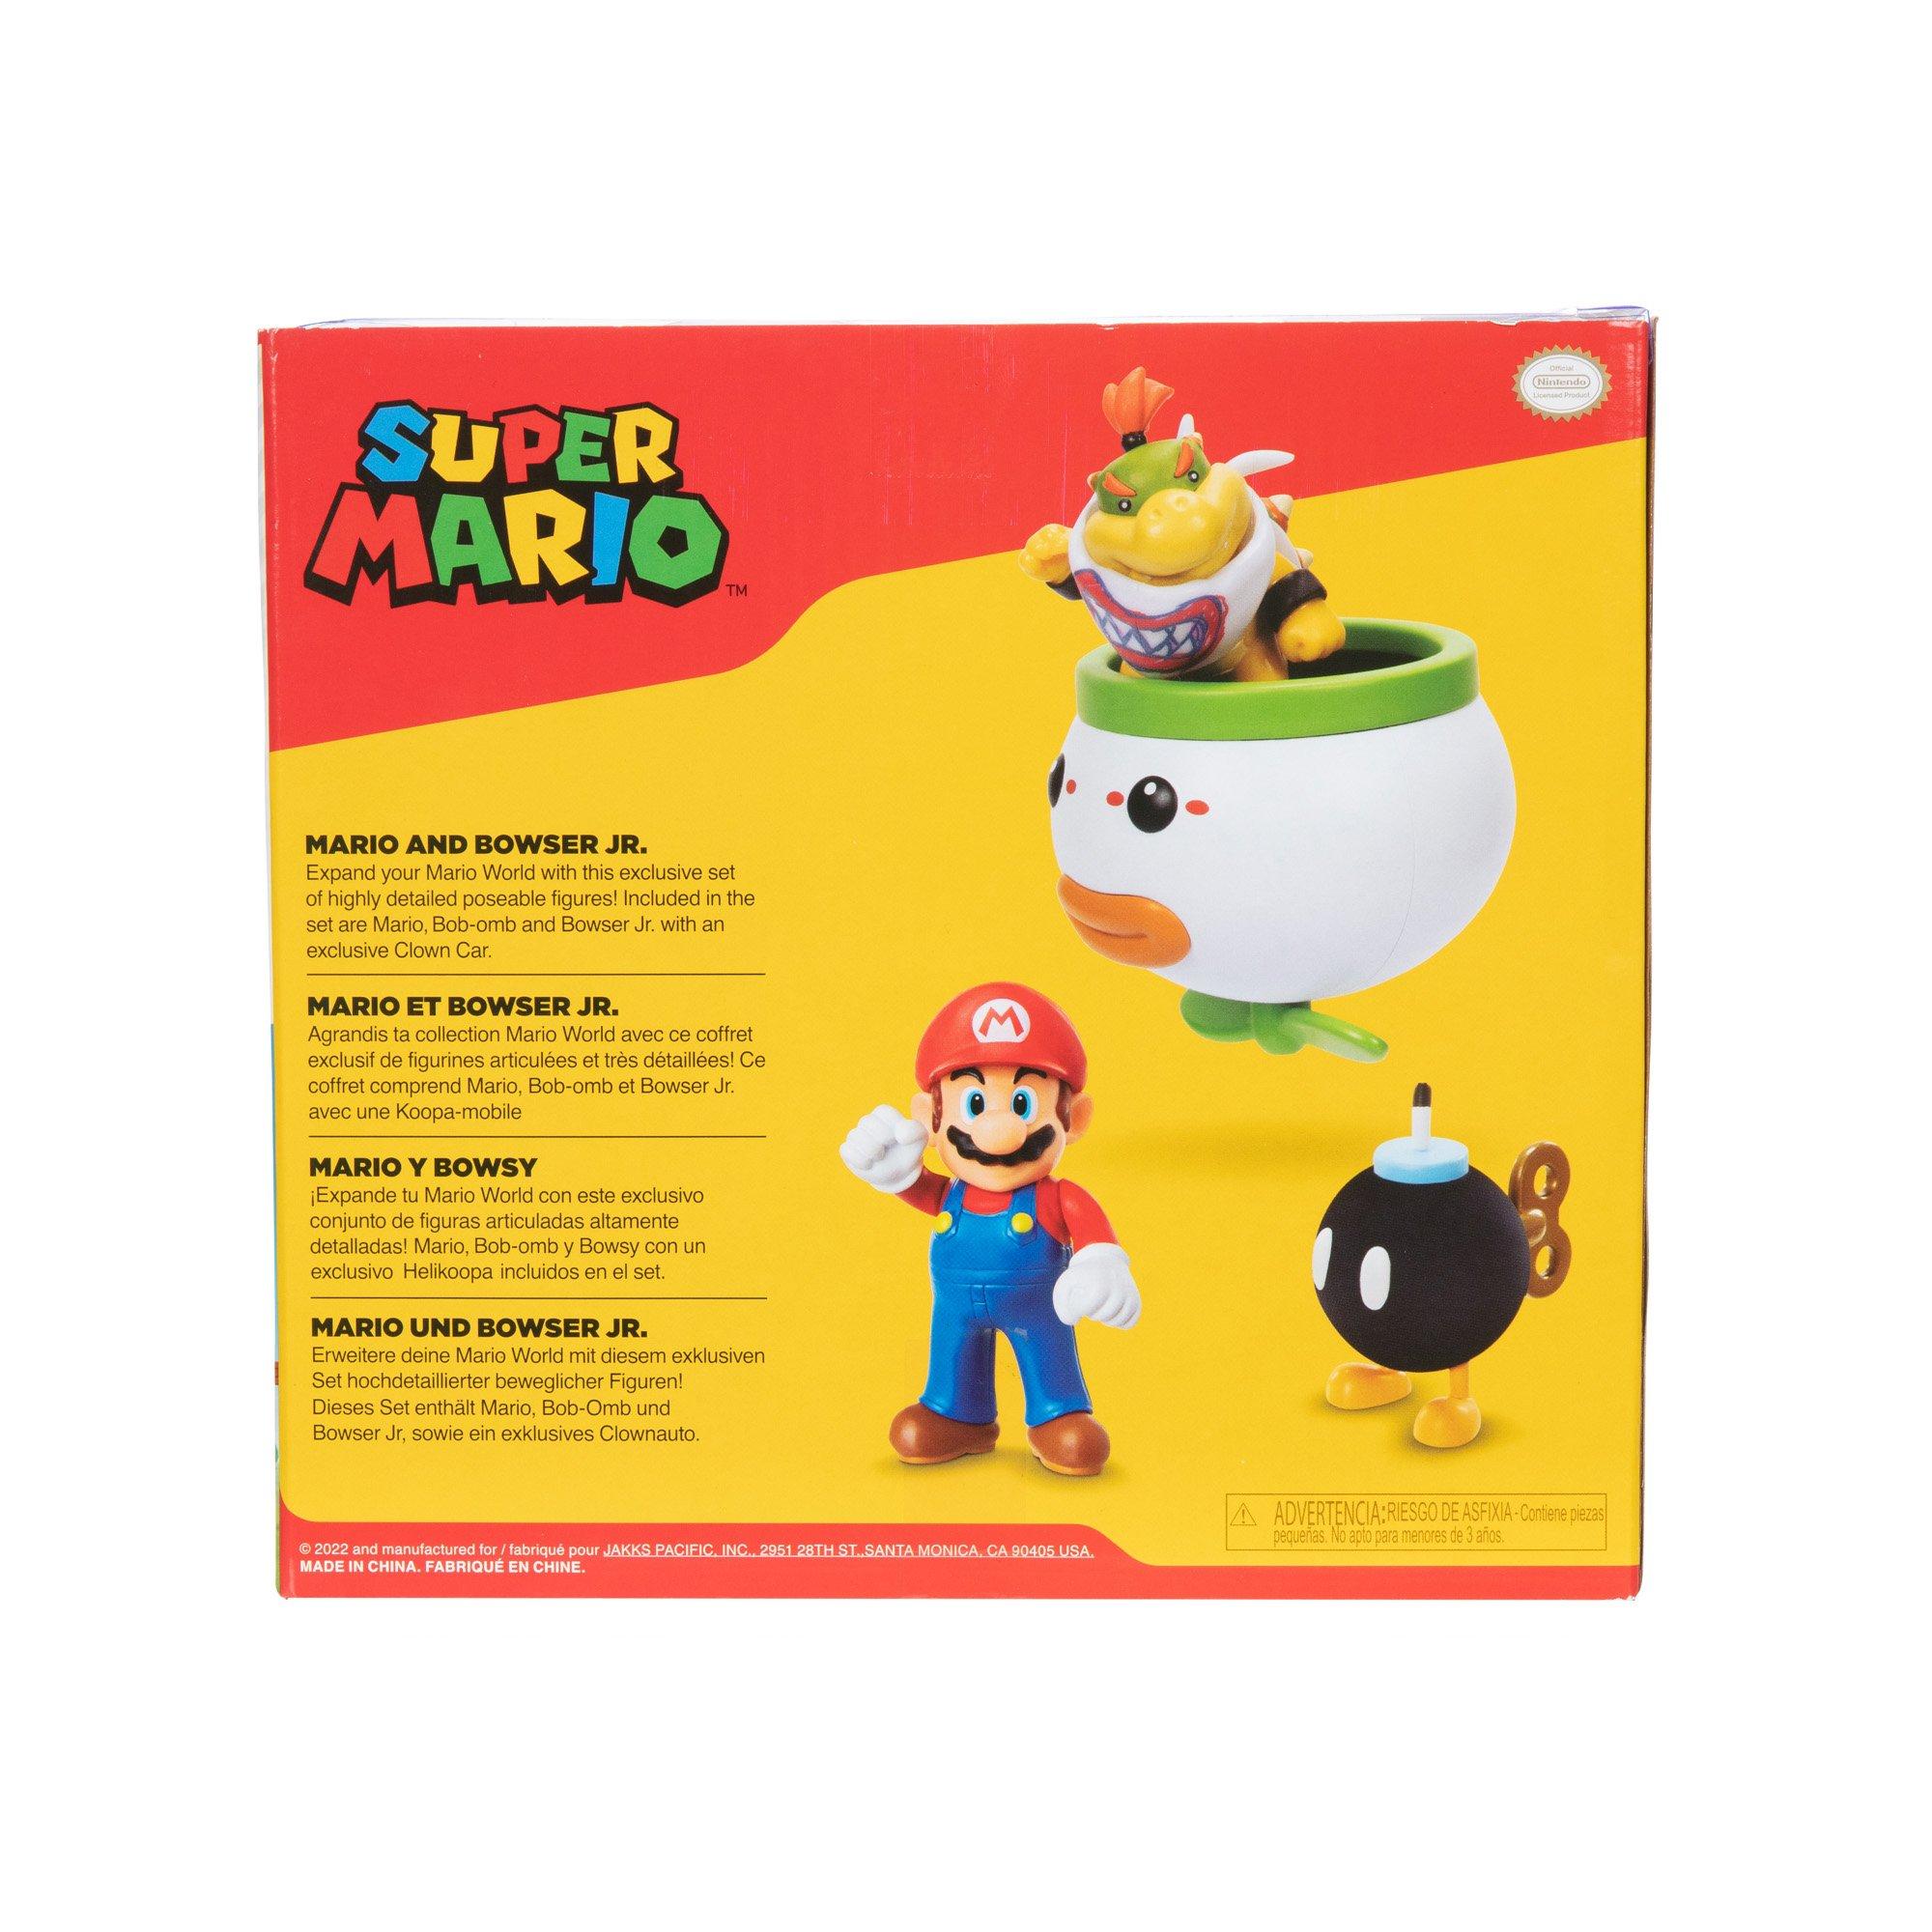 Super Mario 4 Action Figure 2 Pack: Link & Zelda : Toys & Games 